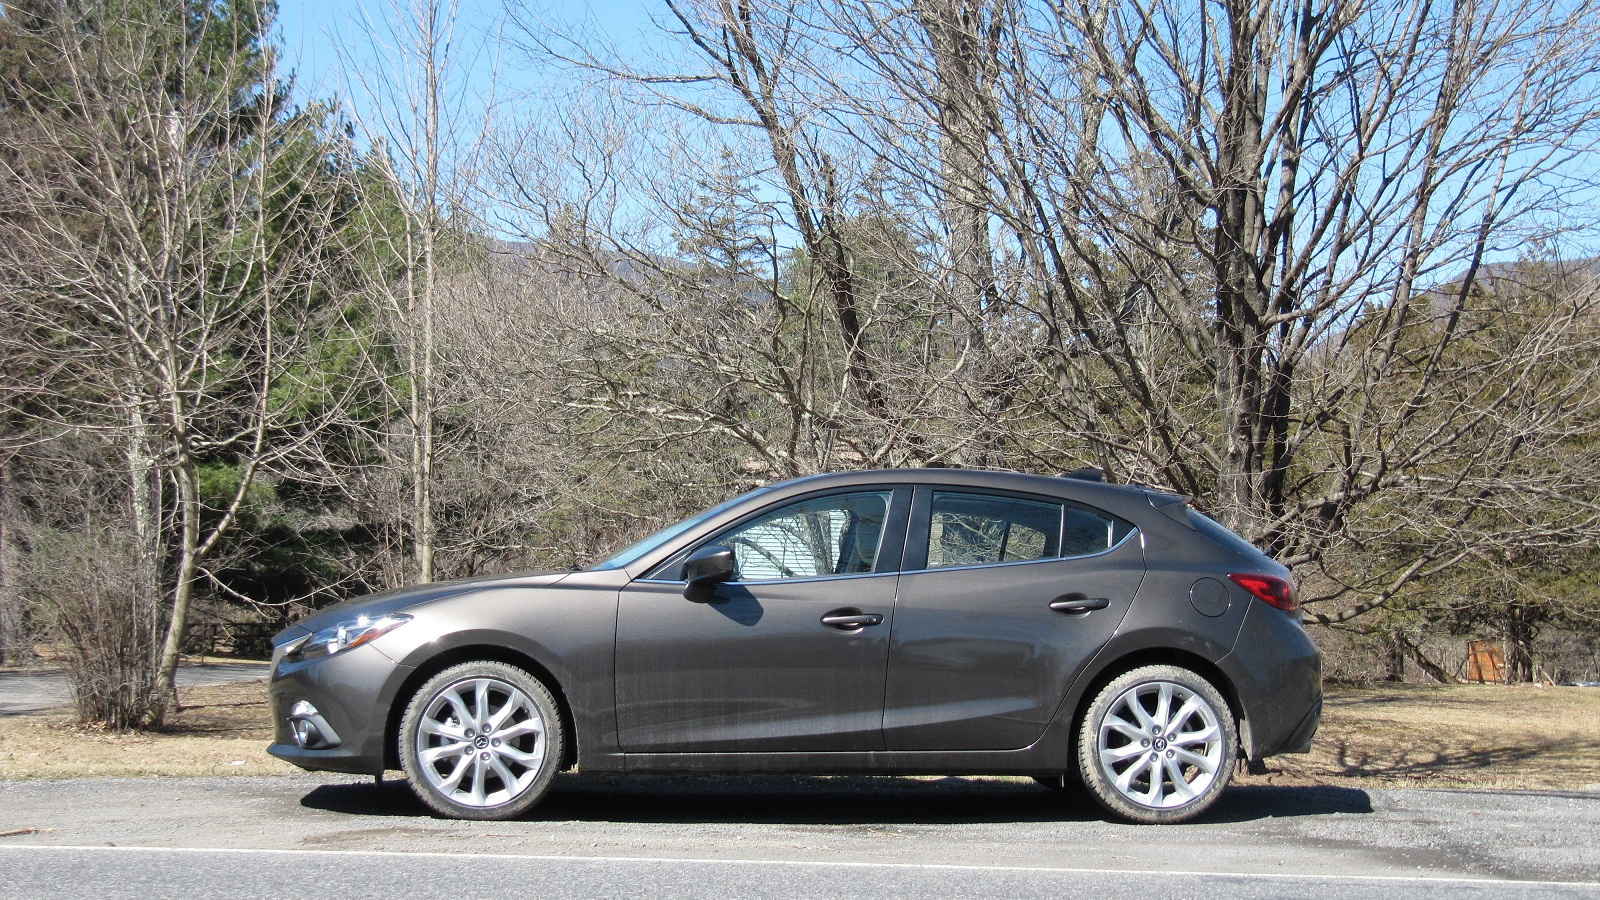 2014 Mazda 3, Catskill Mountains, NY, Apr 2013